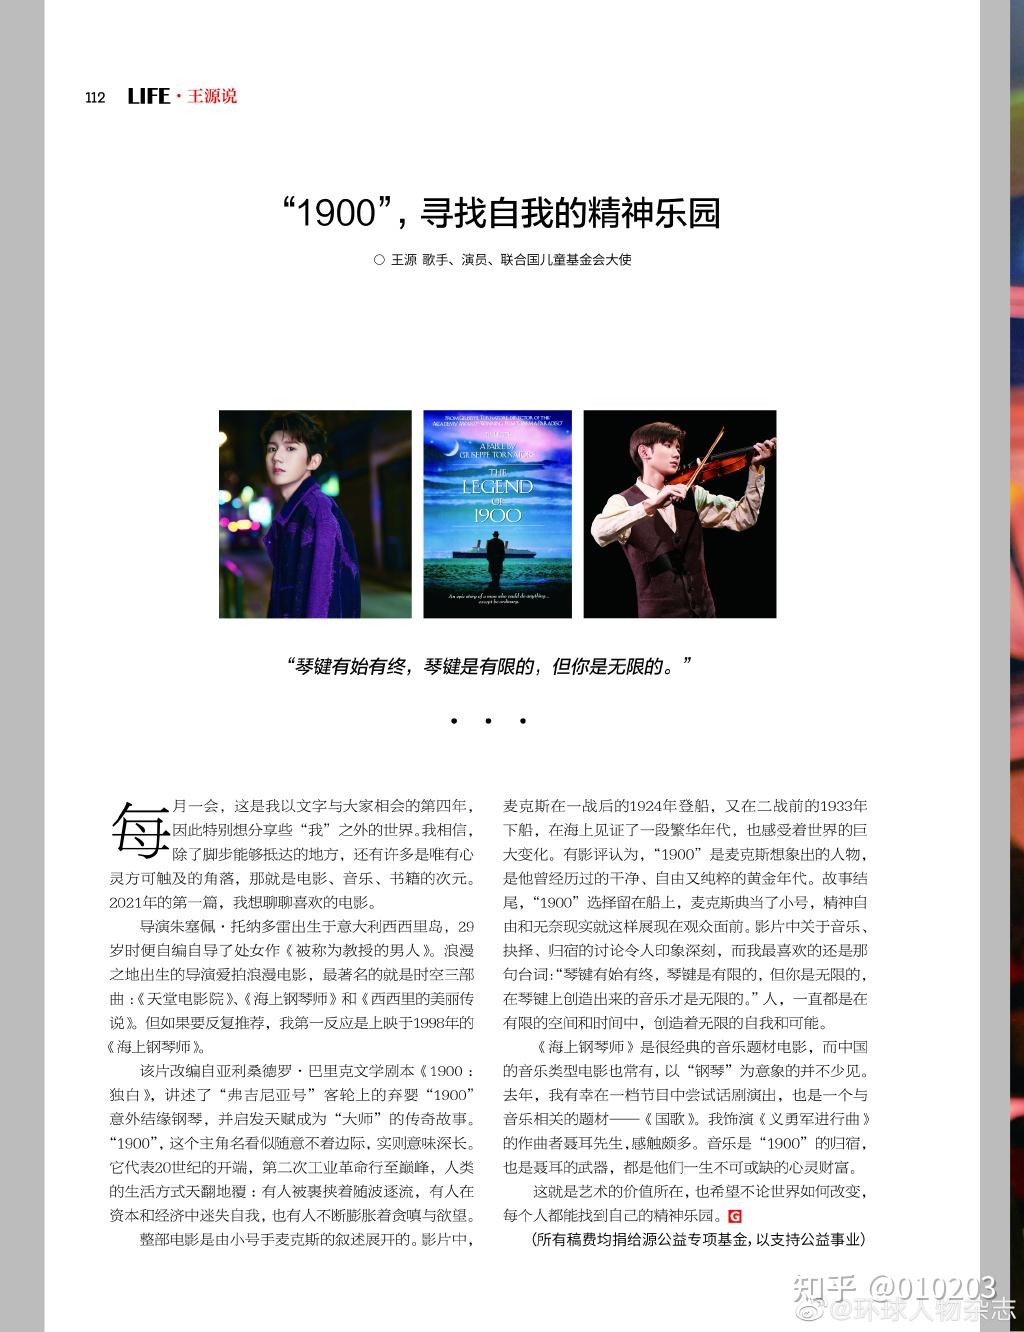 环球人物杂志专栏王源说1900寻找自我的精神乐园